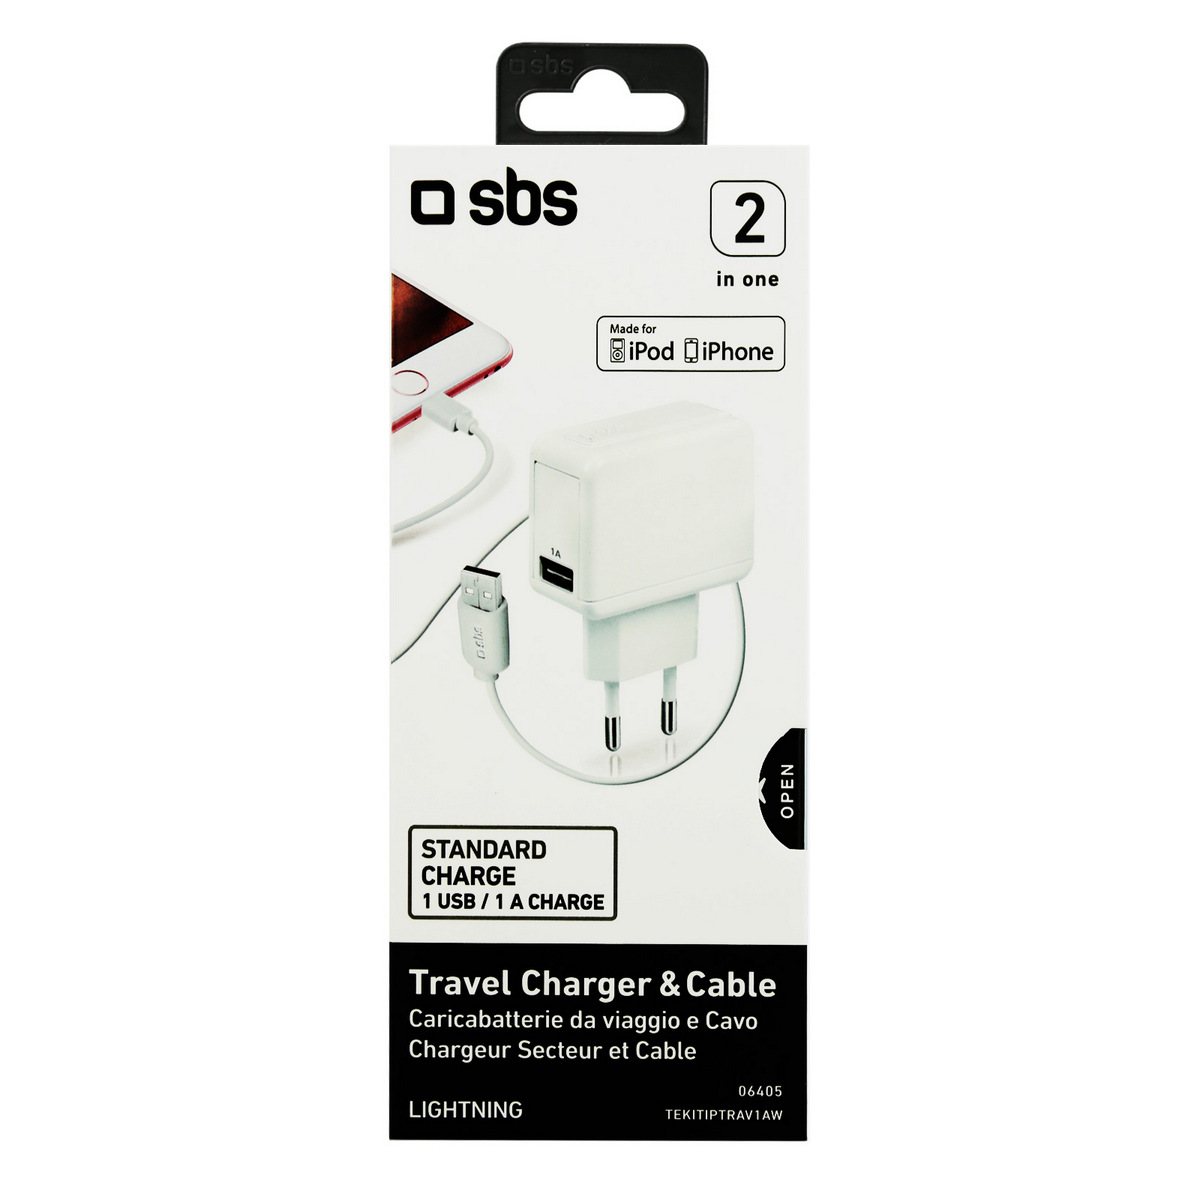 SBS CHARGER KIT WITH USB TRAVEL CHARGER 2 OUTPUT 1.000 MA + USB DATA CABLE, TEKITIPTRAV1AW posledný kus